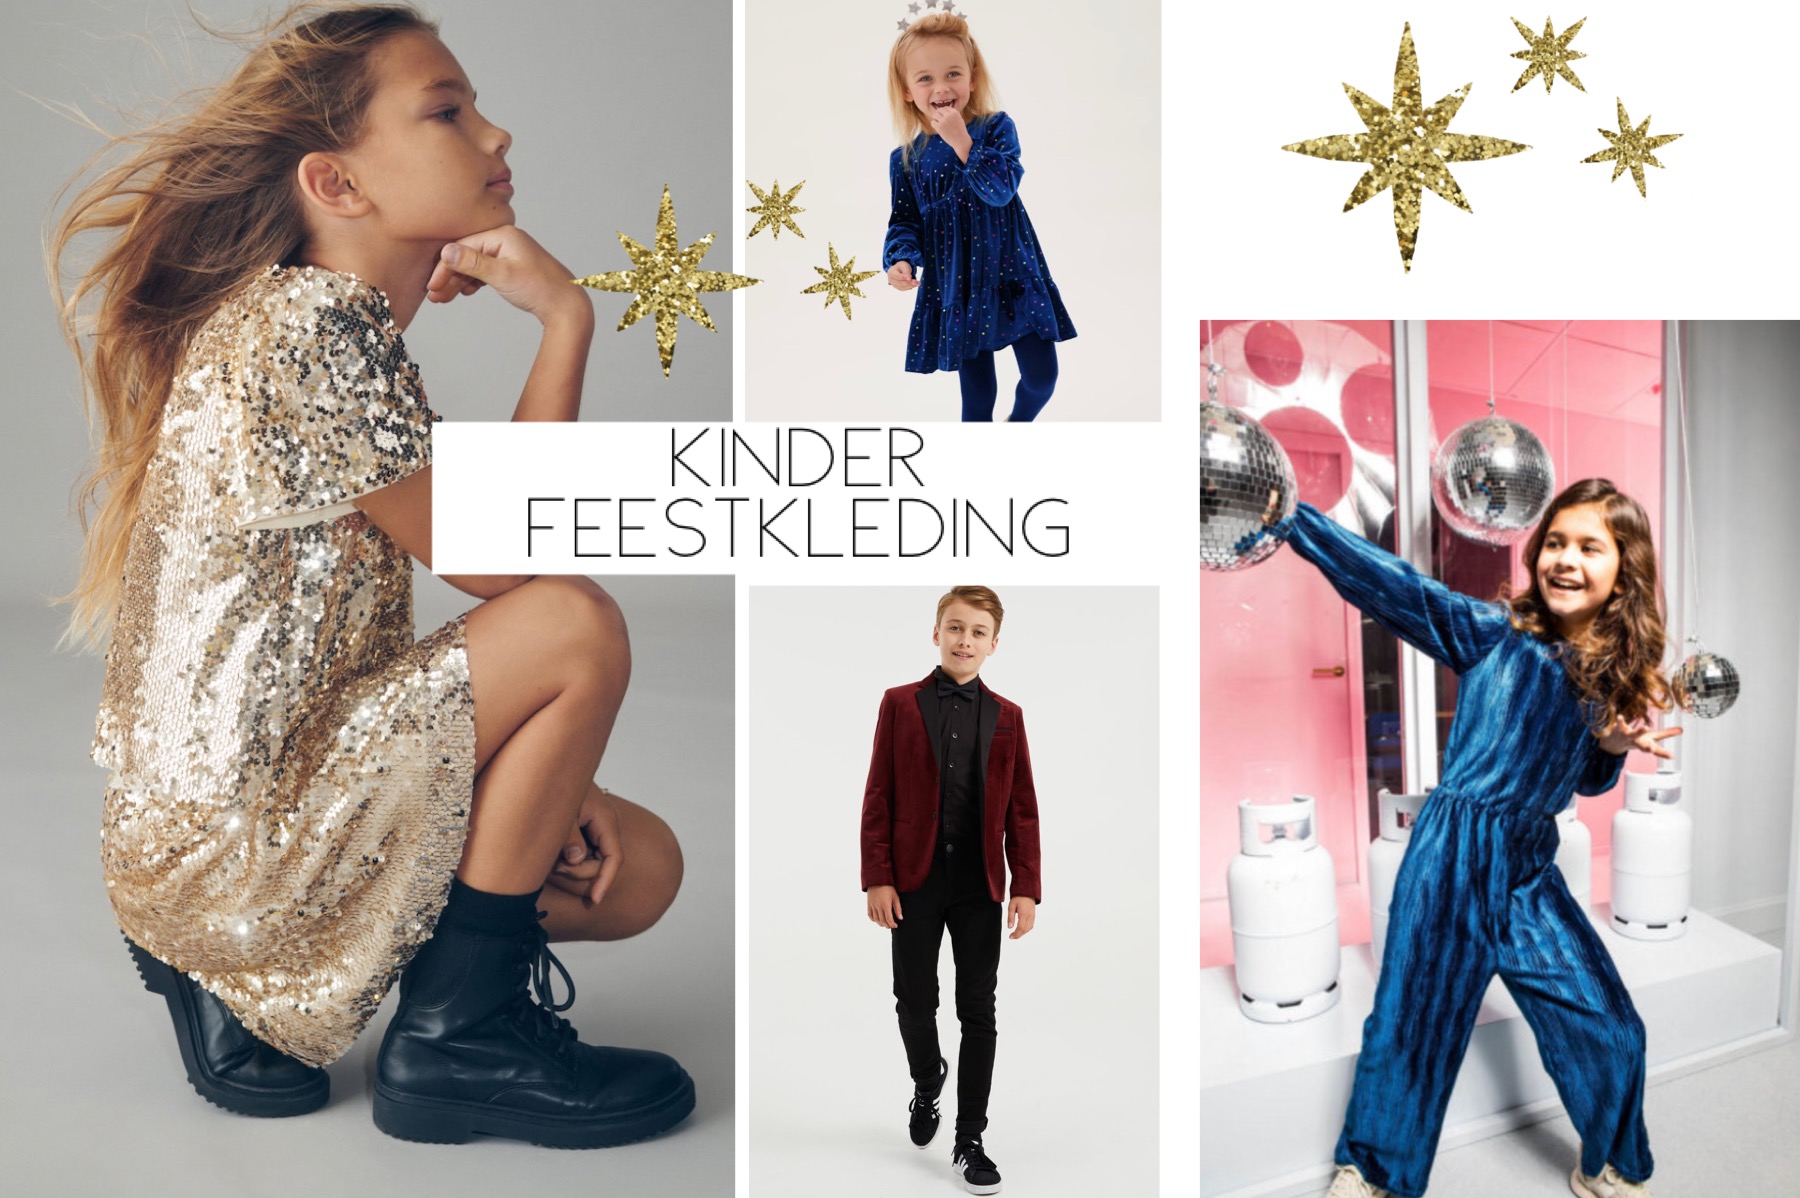 Kinder feestkleding: van fluweel tot goud met glitters